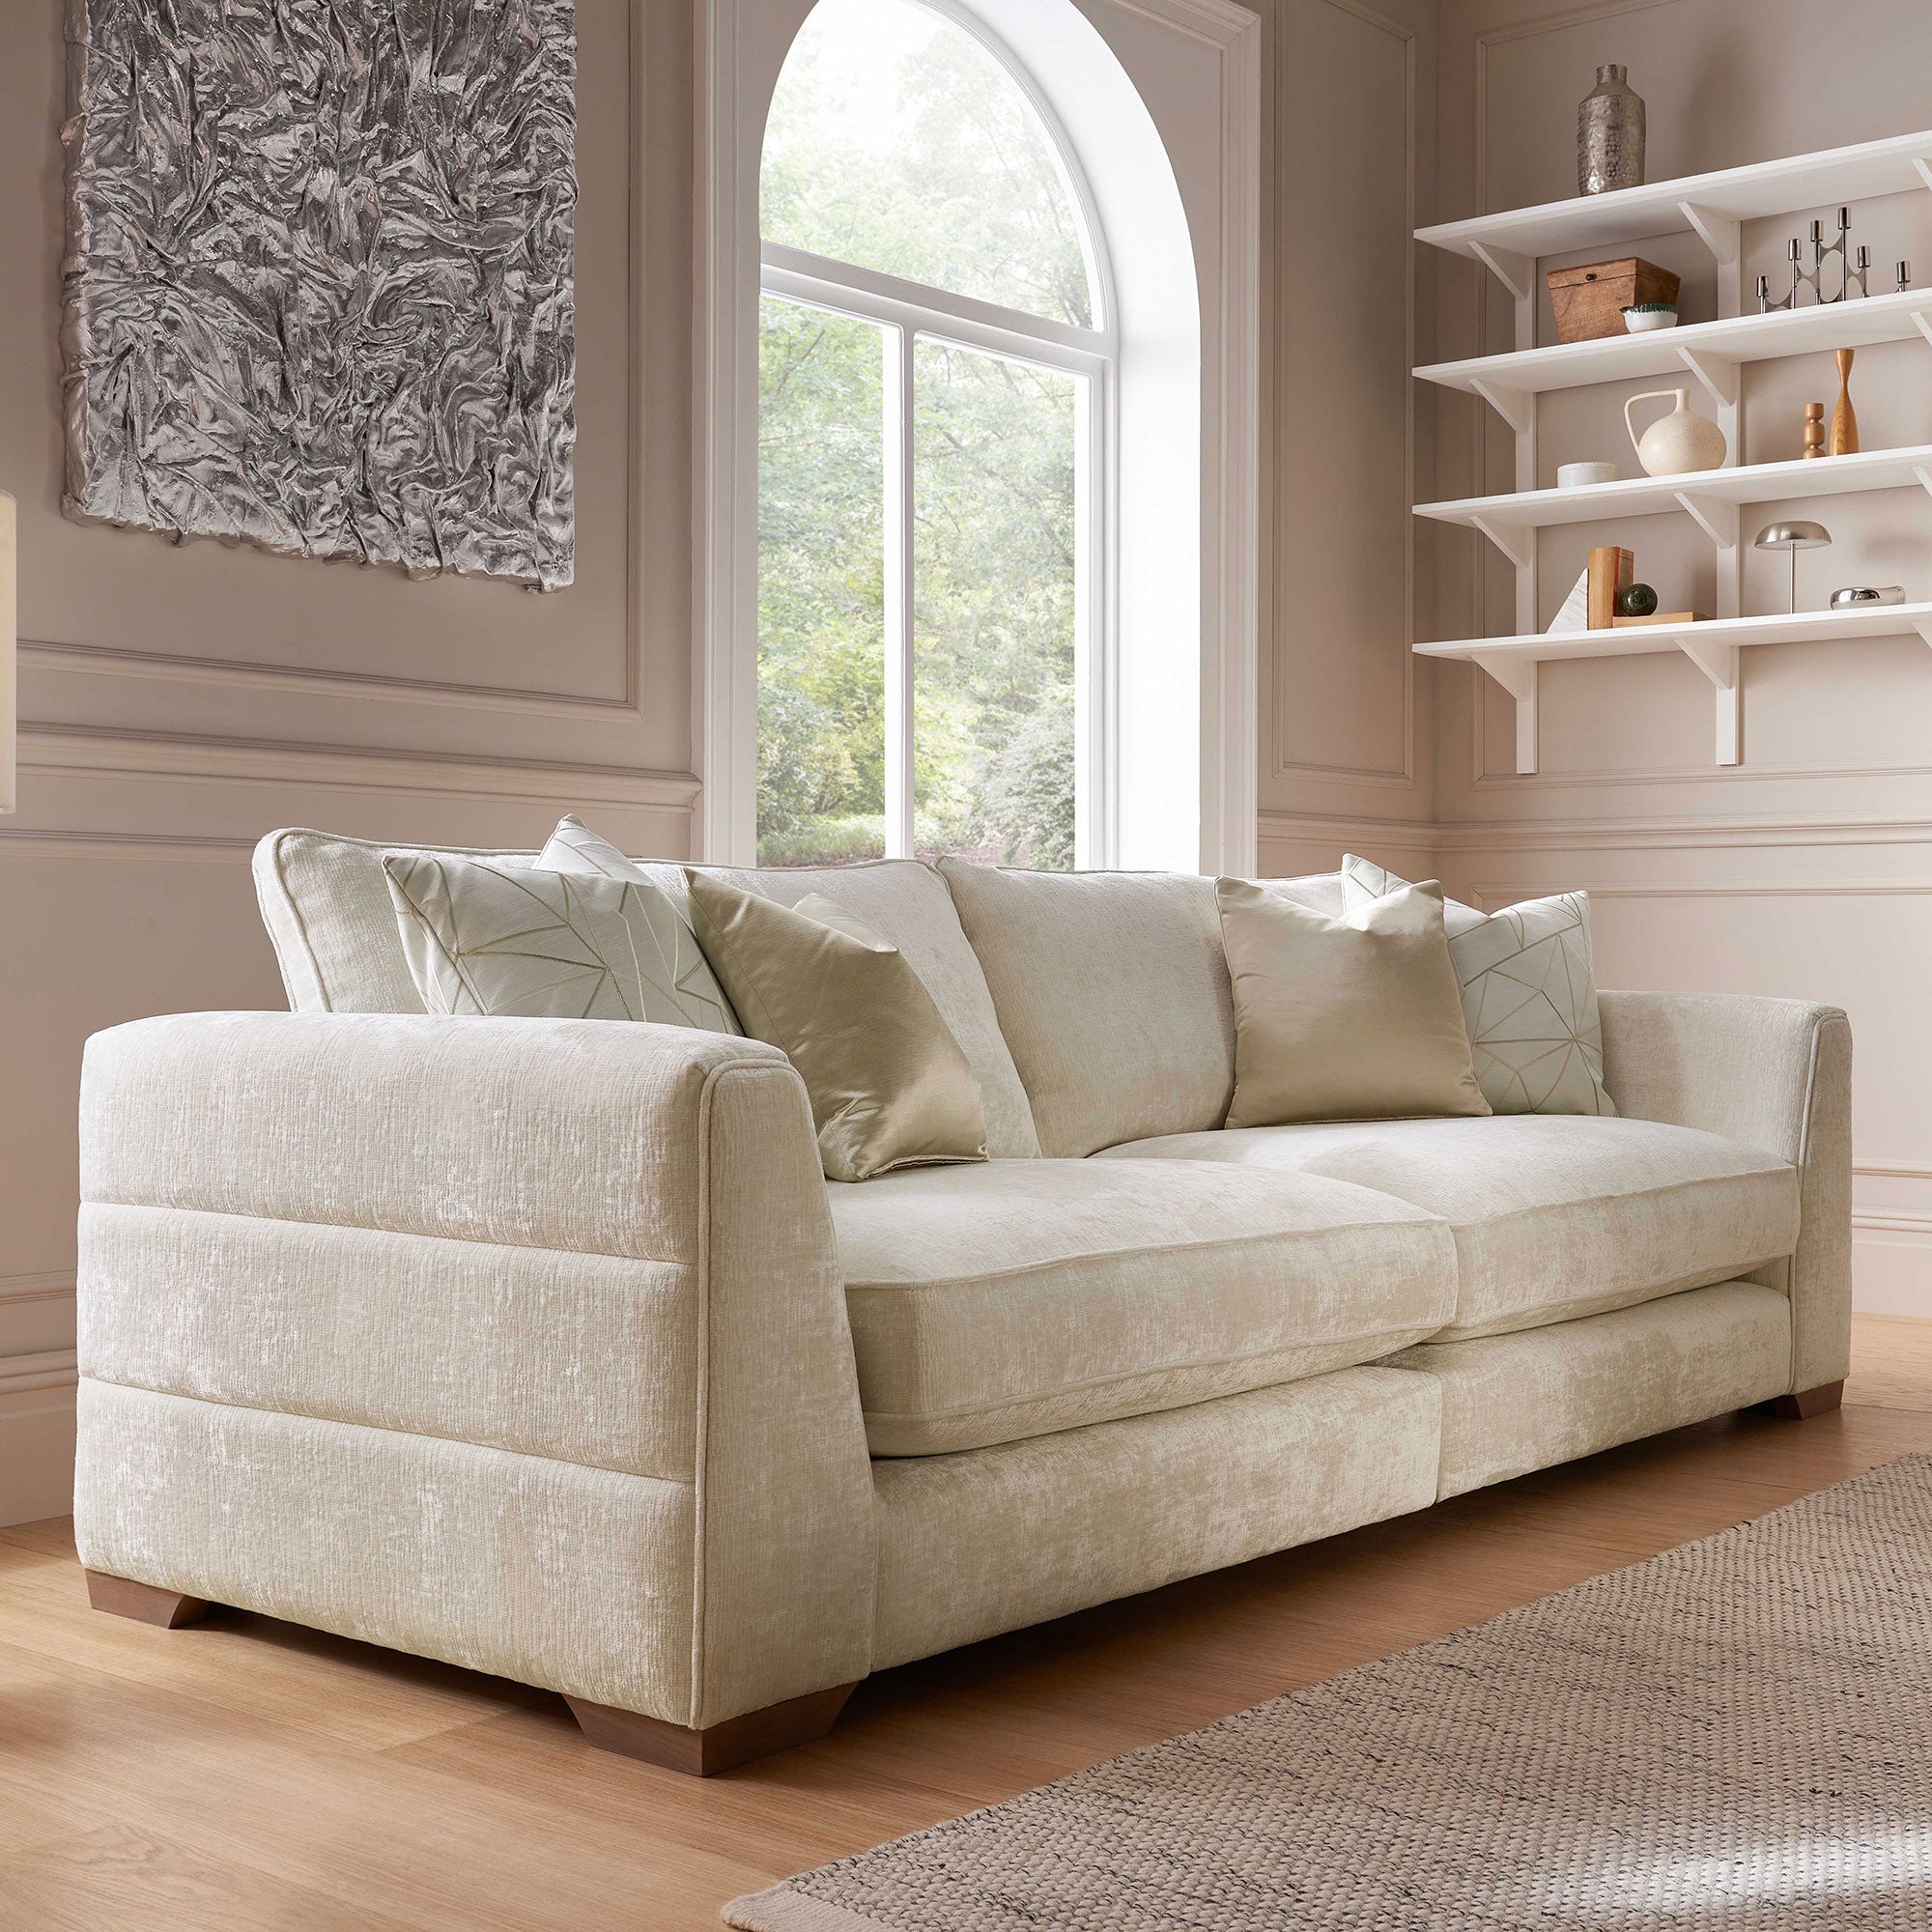 Annabel - Medium Sofa In Fabric